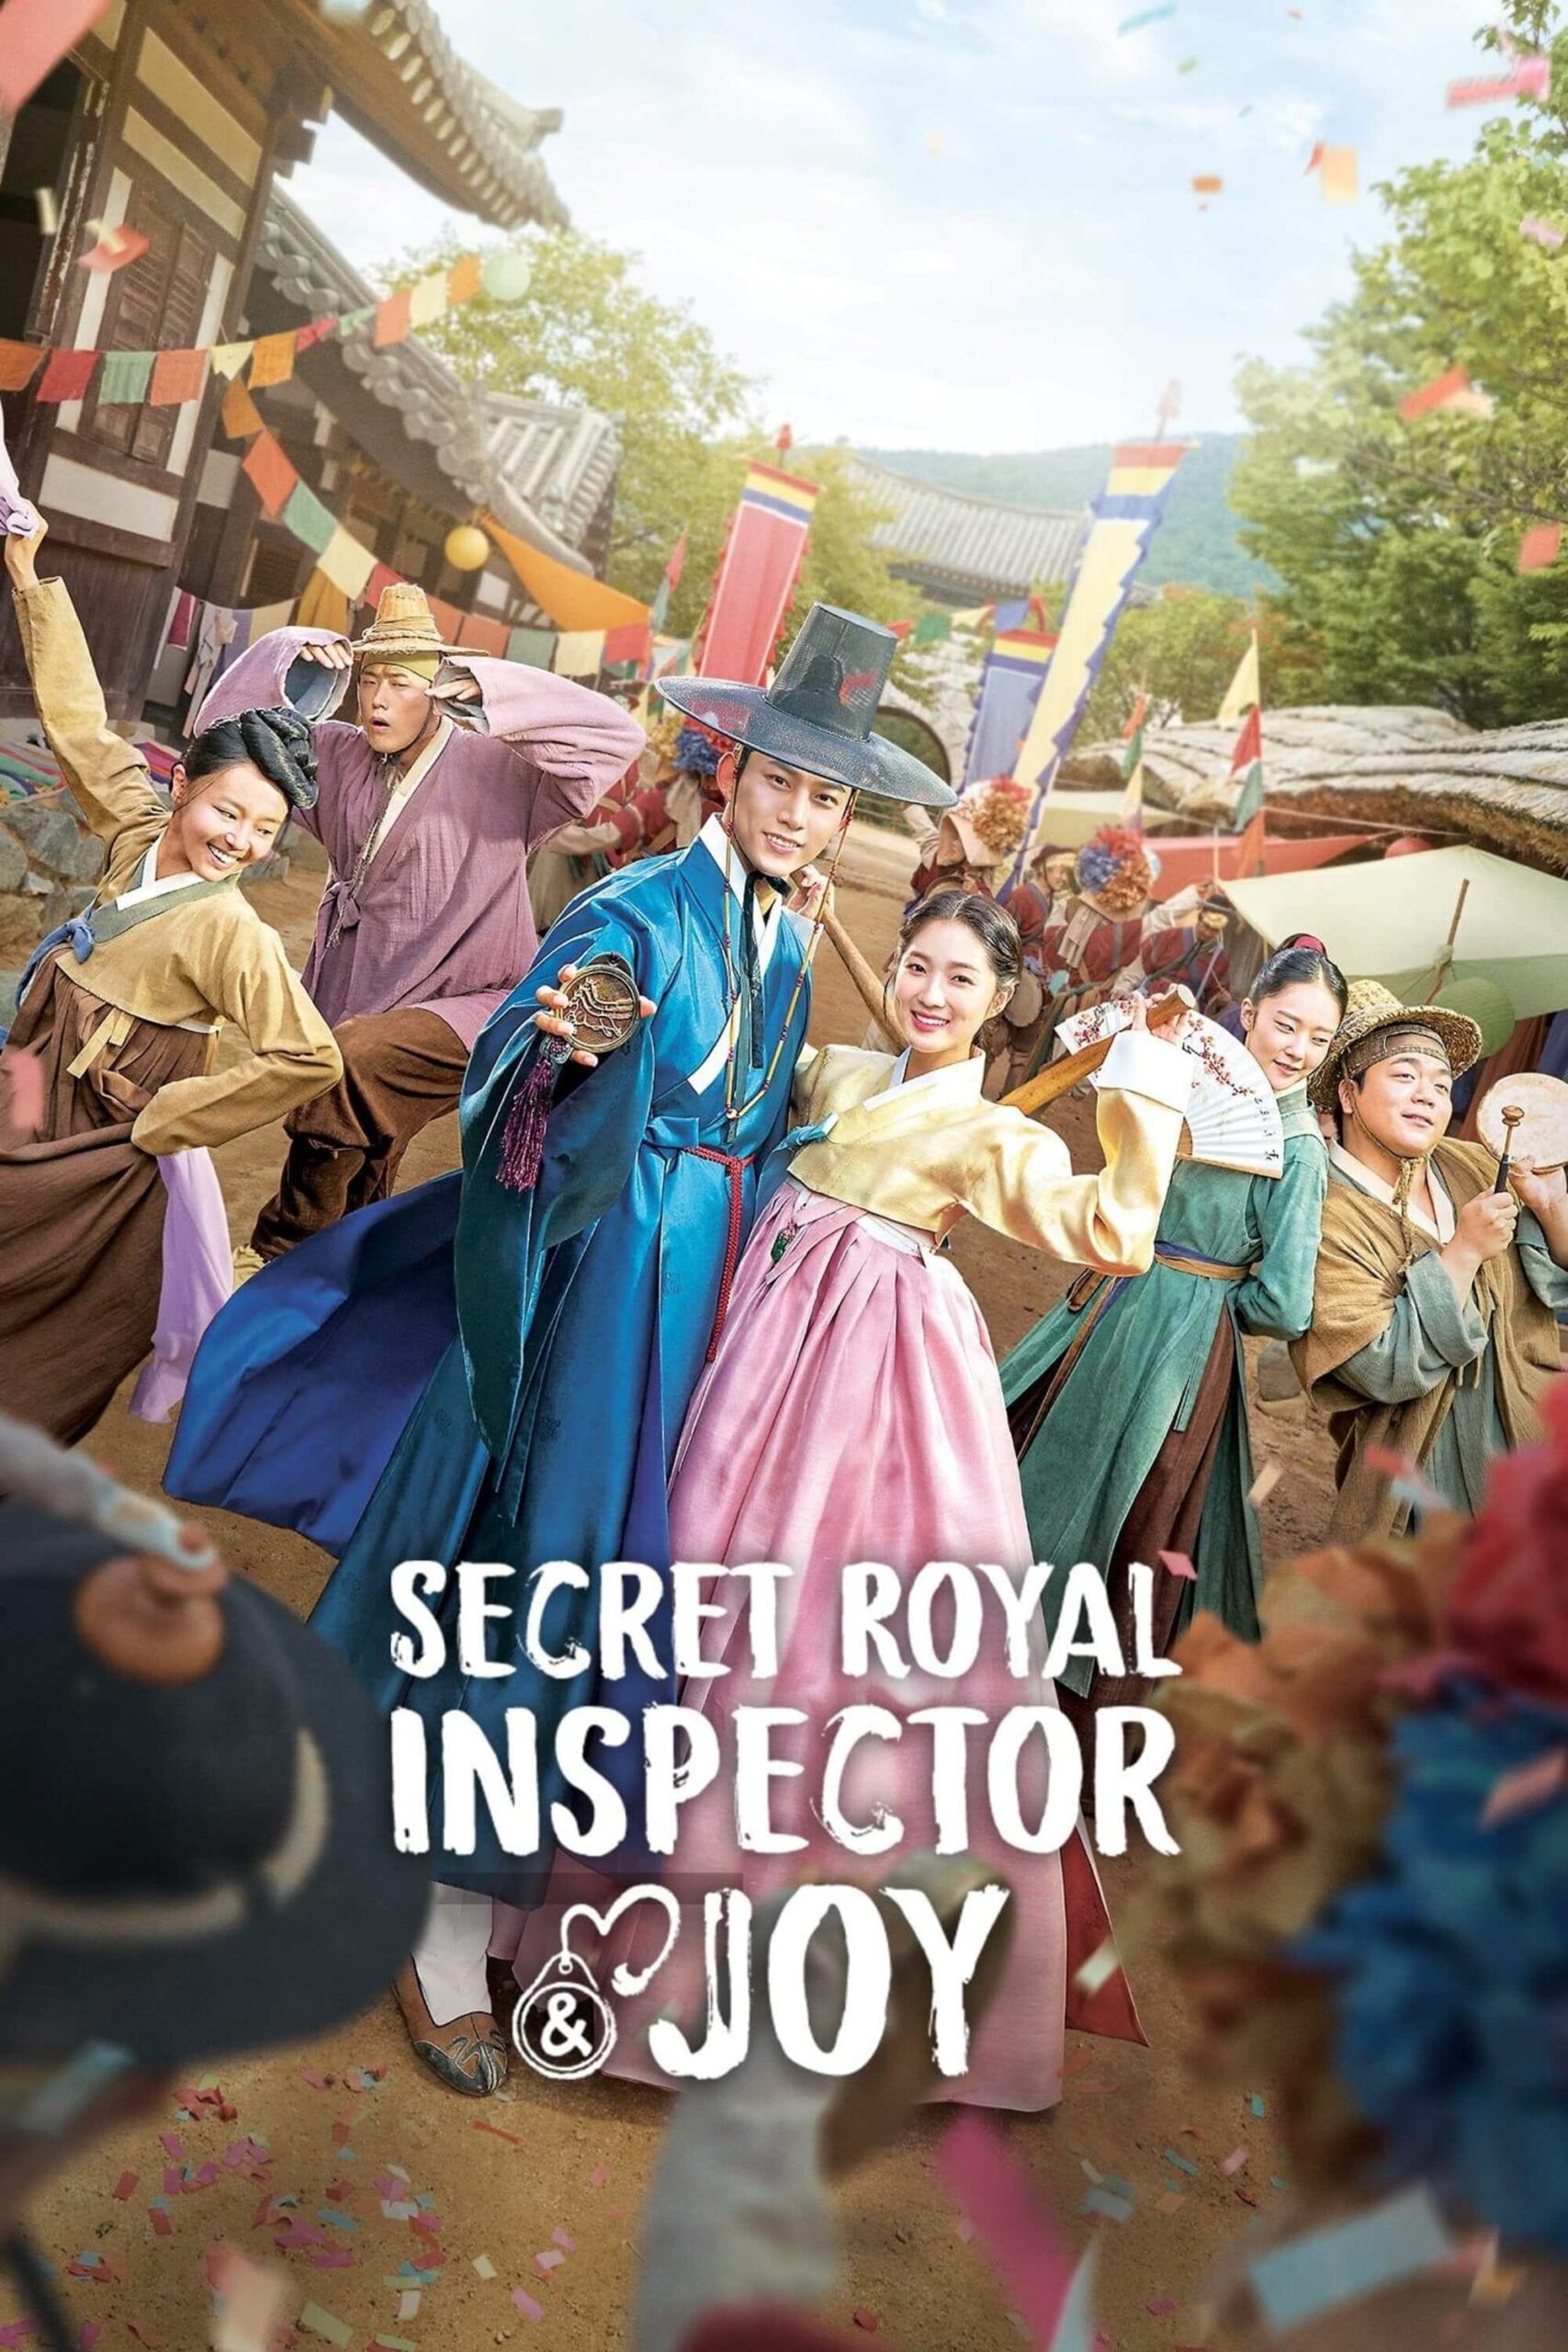 بازرس مخفی سلطنتی و جوی (Secret Royal Inspector & Joy)